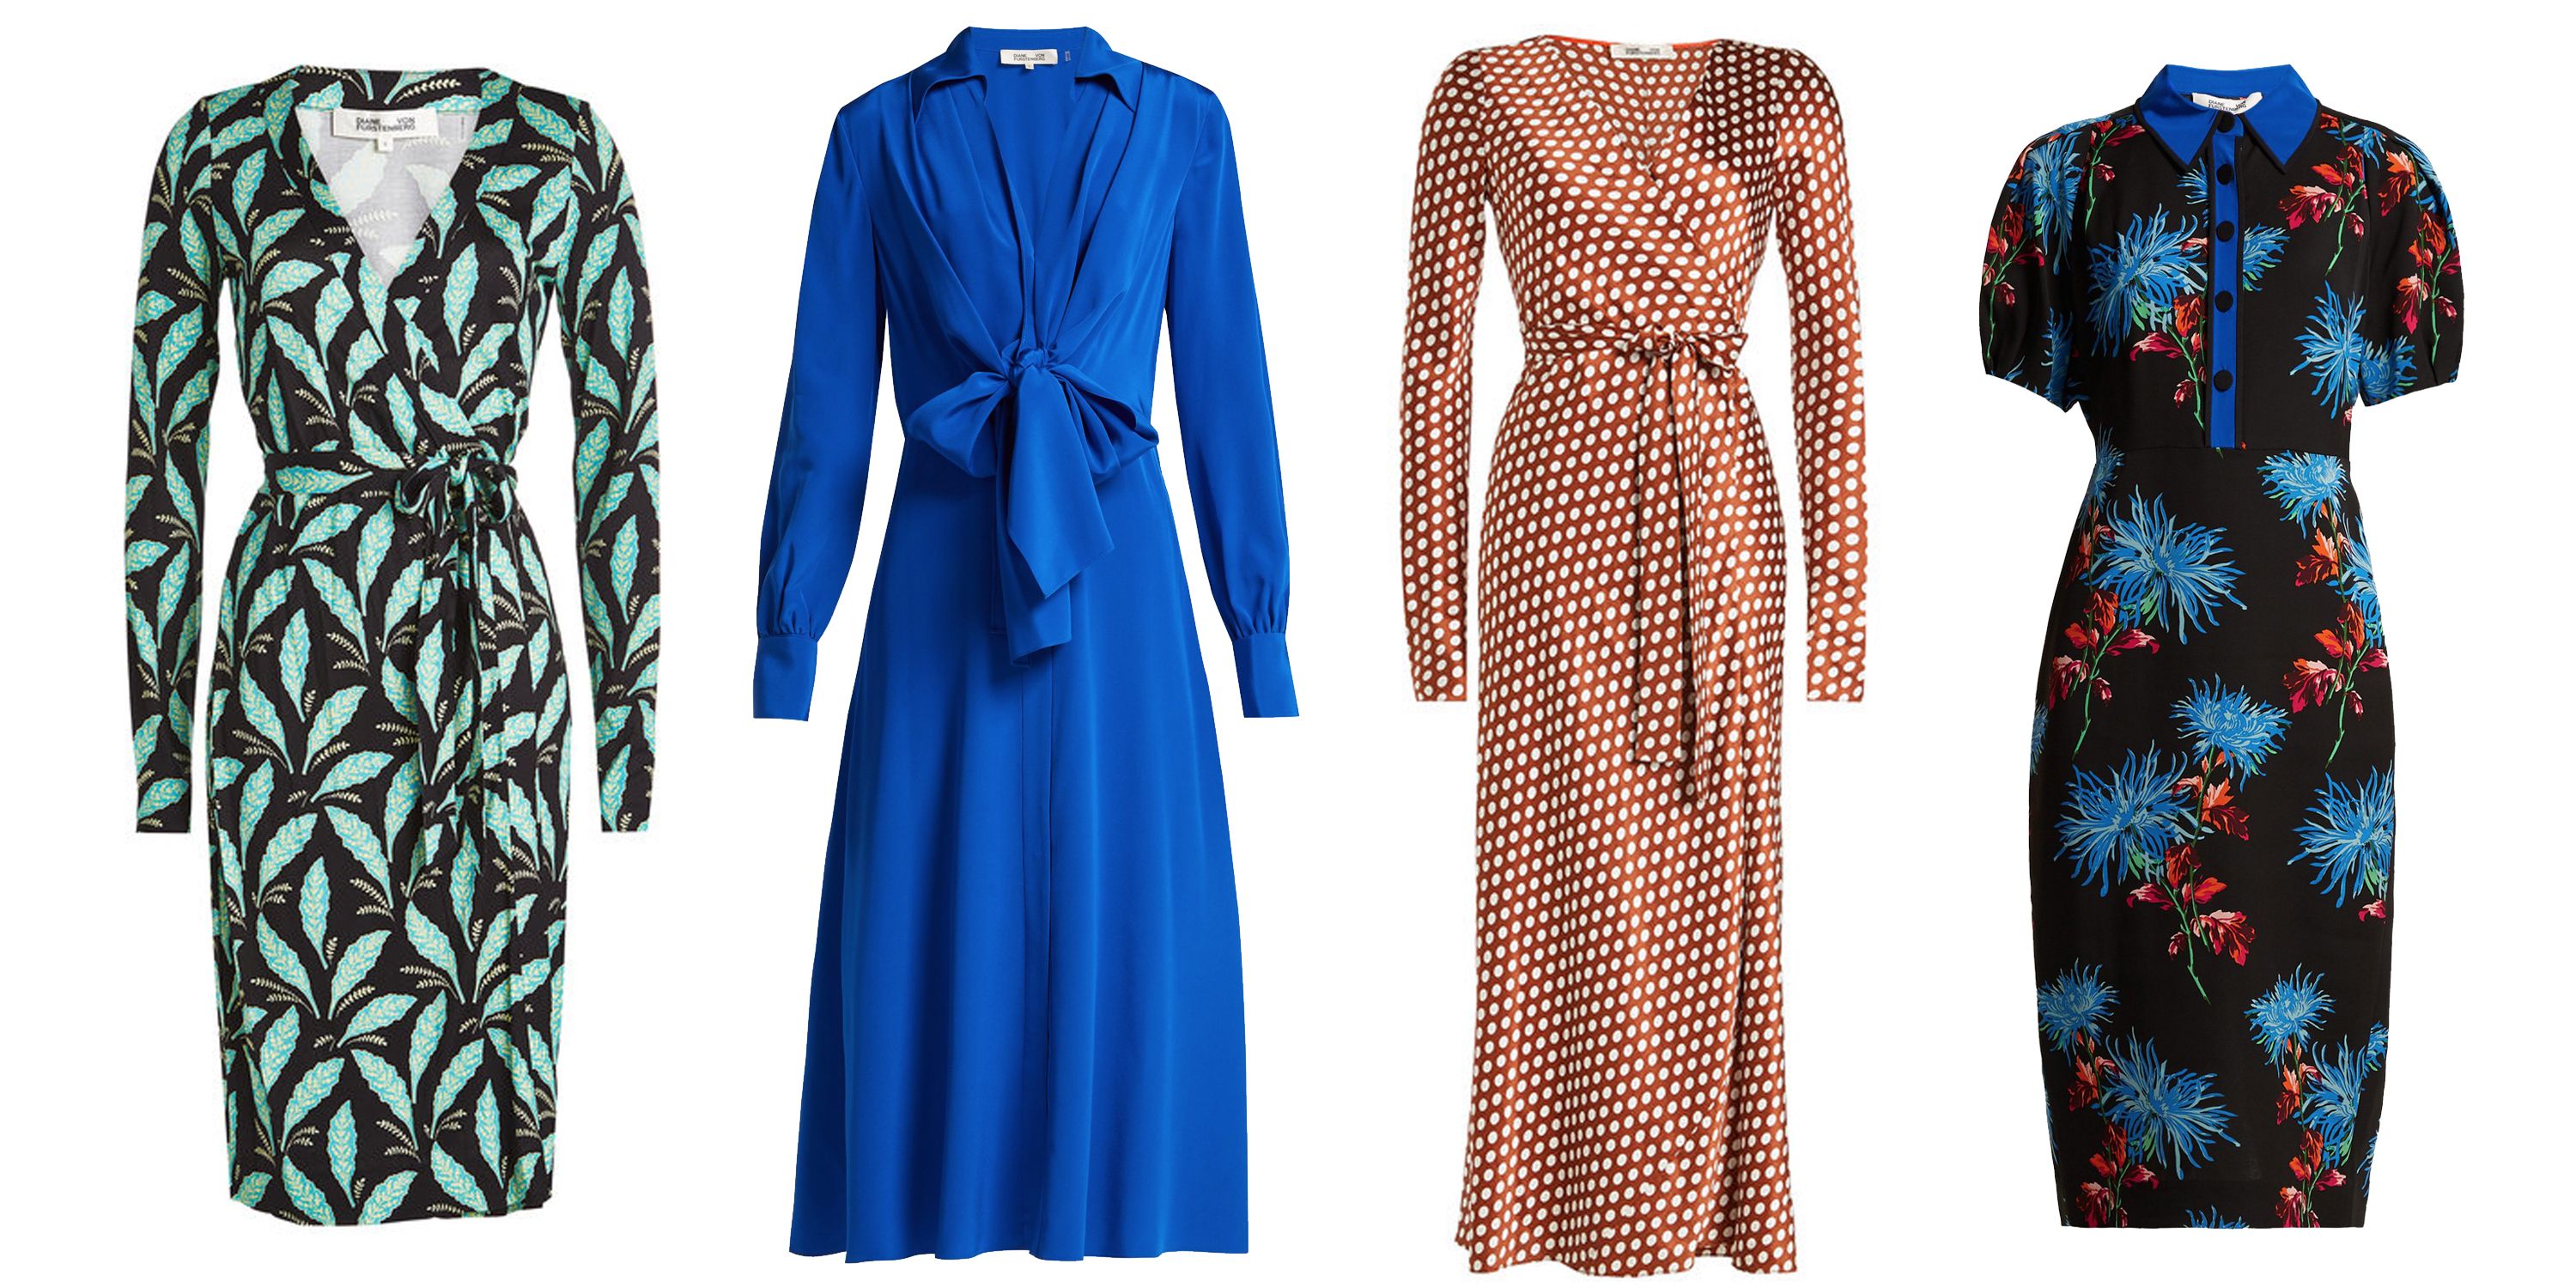 Diane von Furstenberg Dress Sale